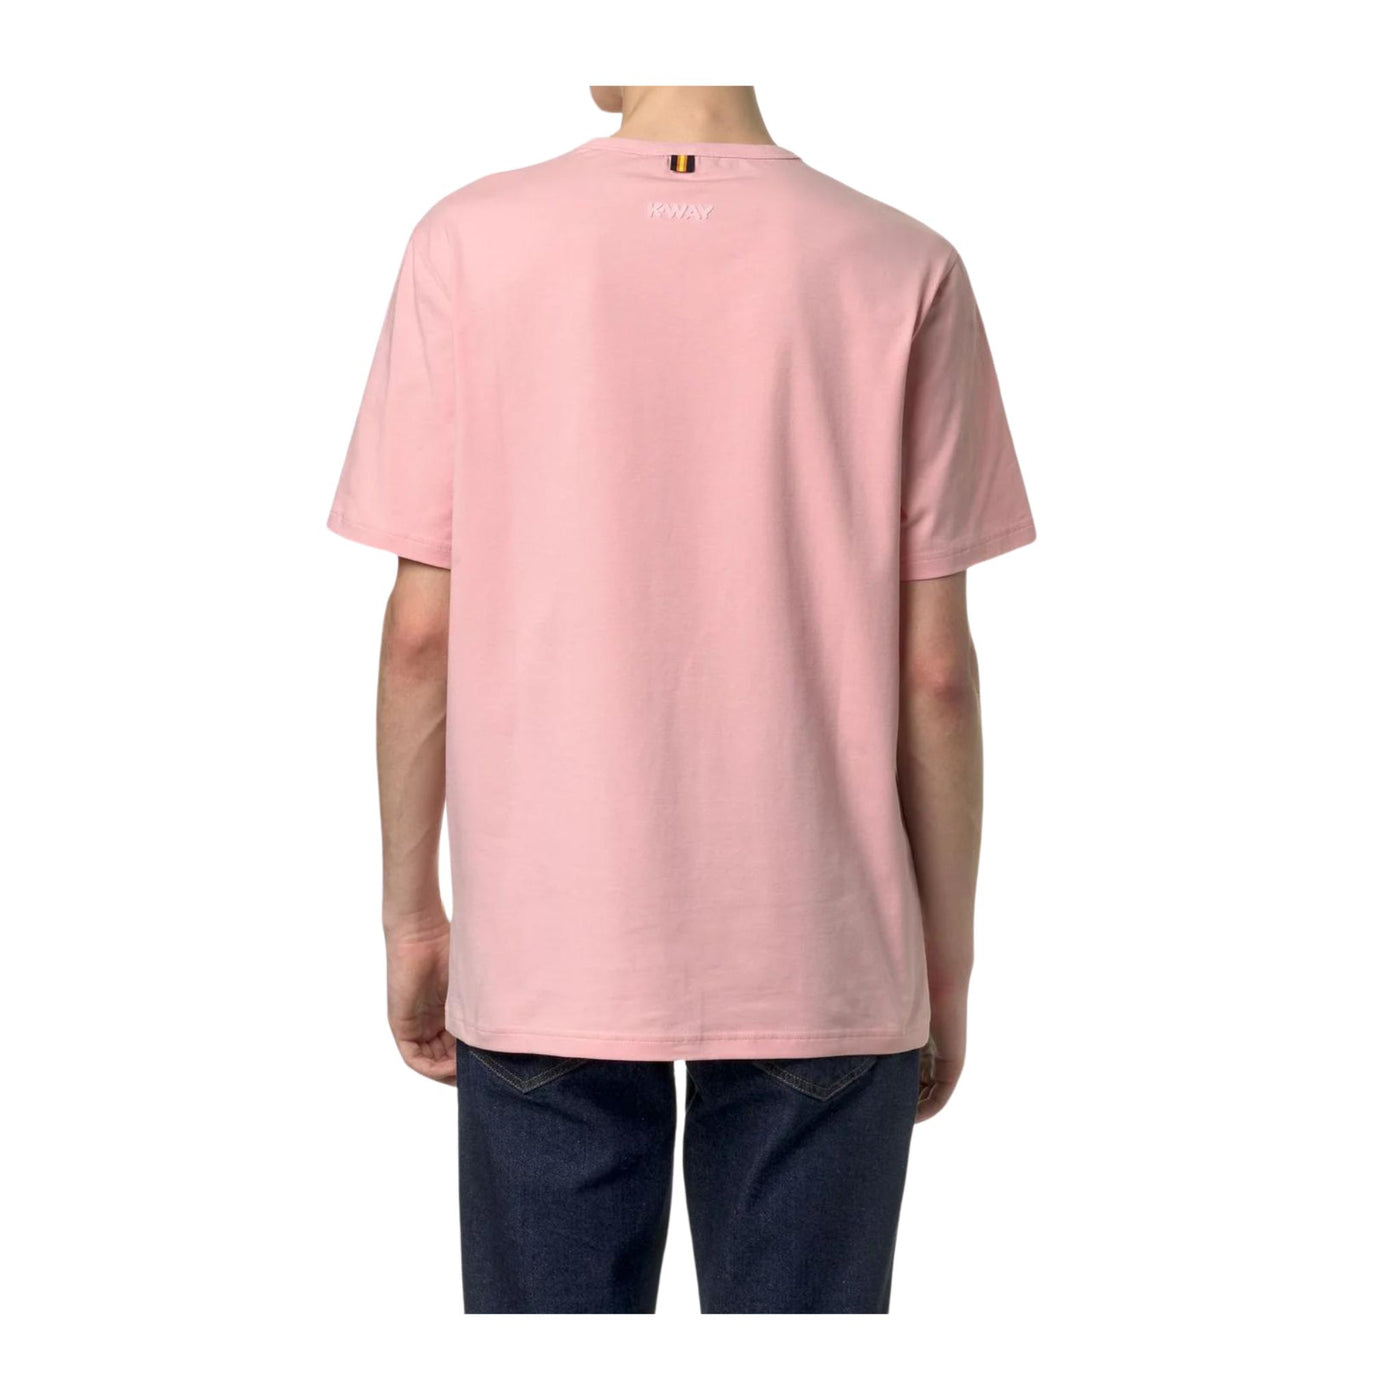 T-shirt Uomo realizzata in puro cotone, a maniche corte, dal design classico